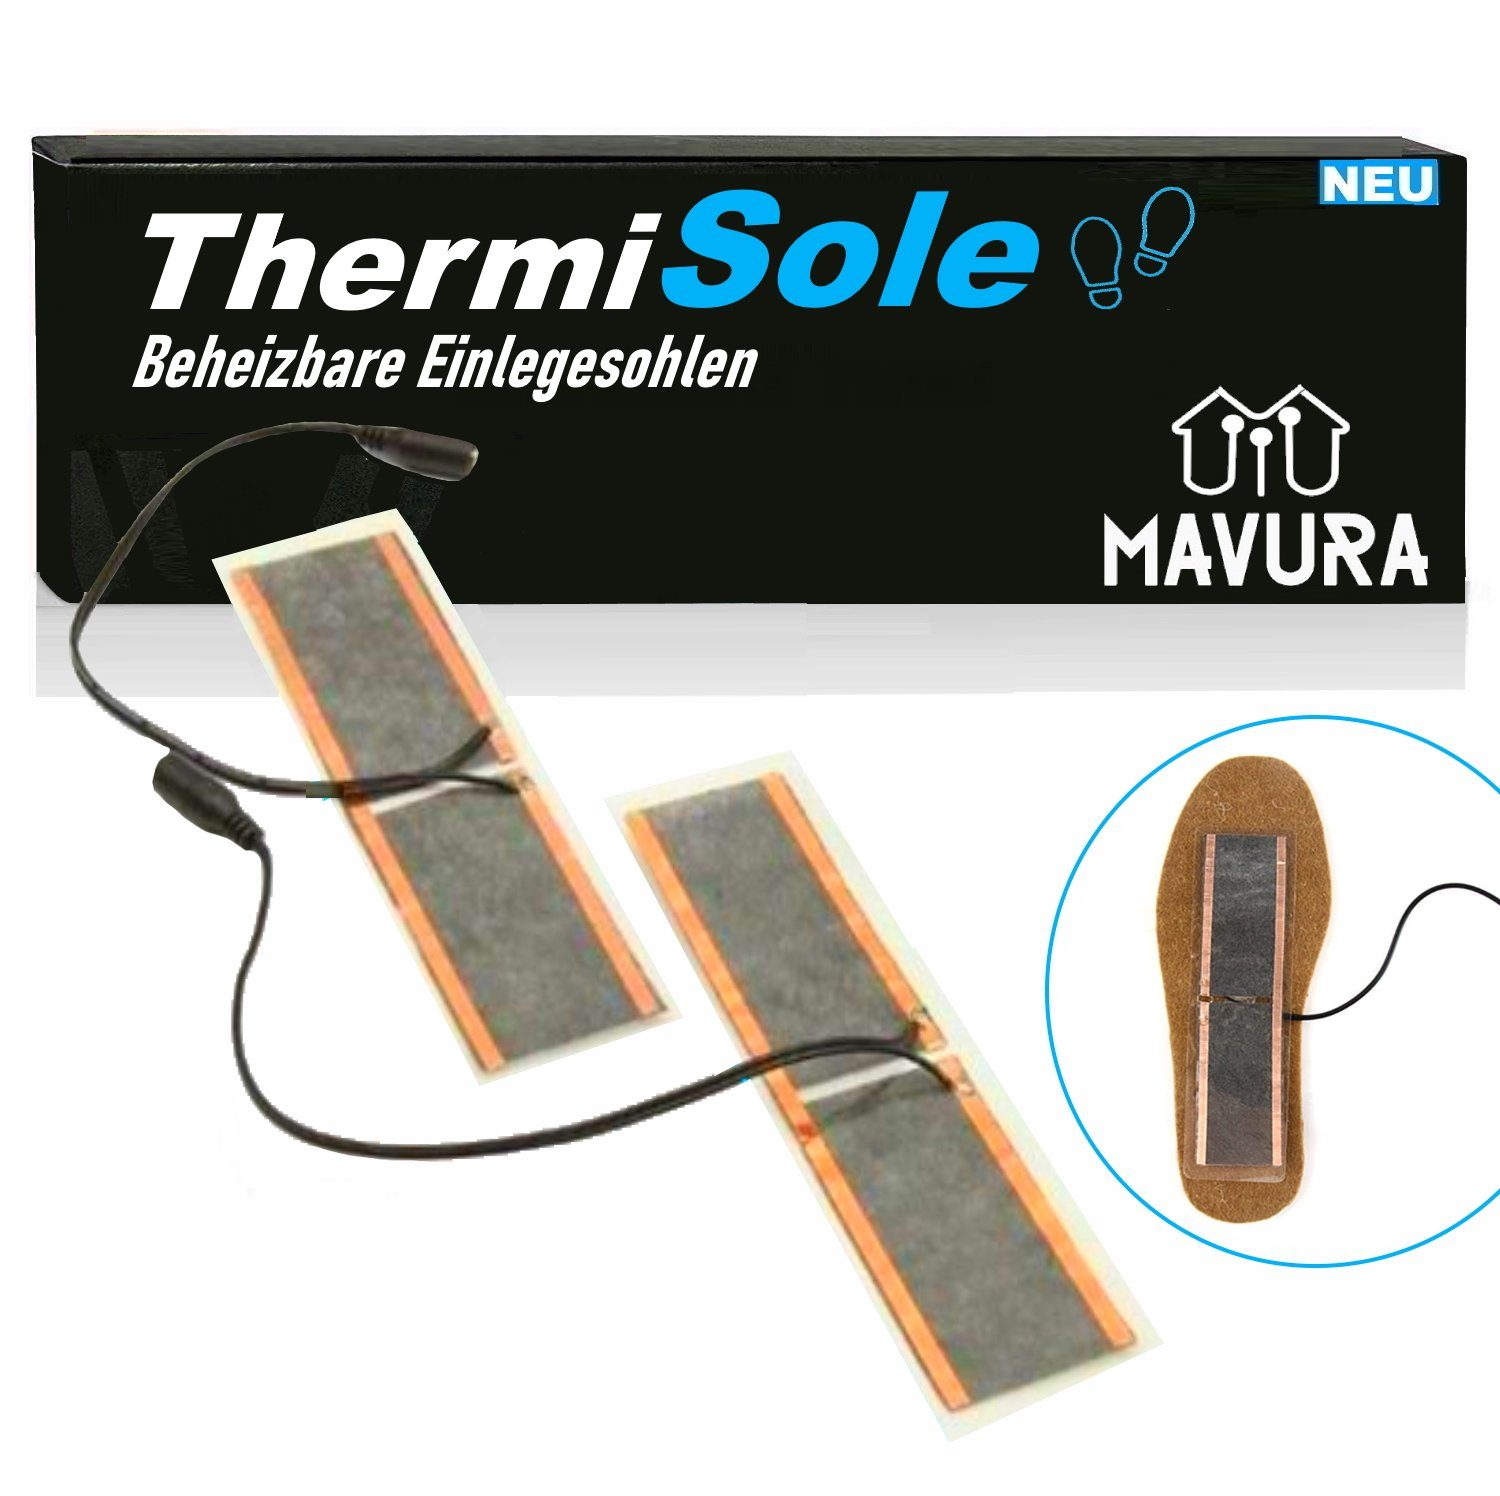 MAVURA Einlegesohlen ThermiSole Beheizbare Einlegesohlen Thermosohlen  Schuhheizung, Schuheinlagen USB elektrisch